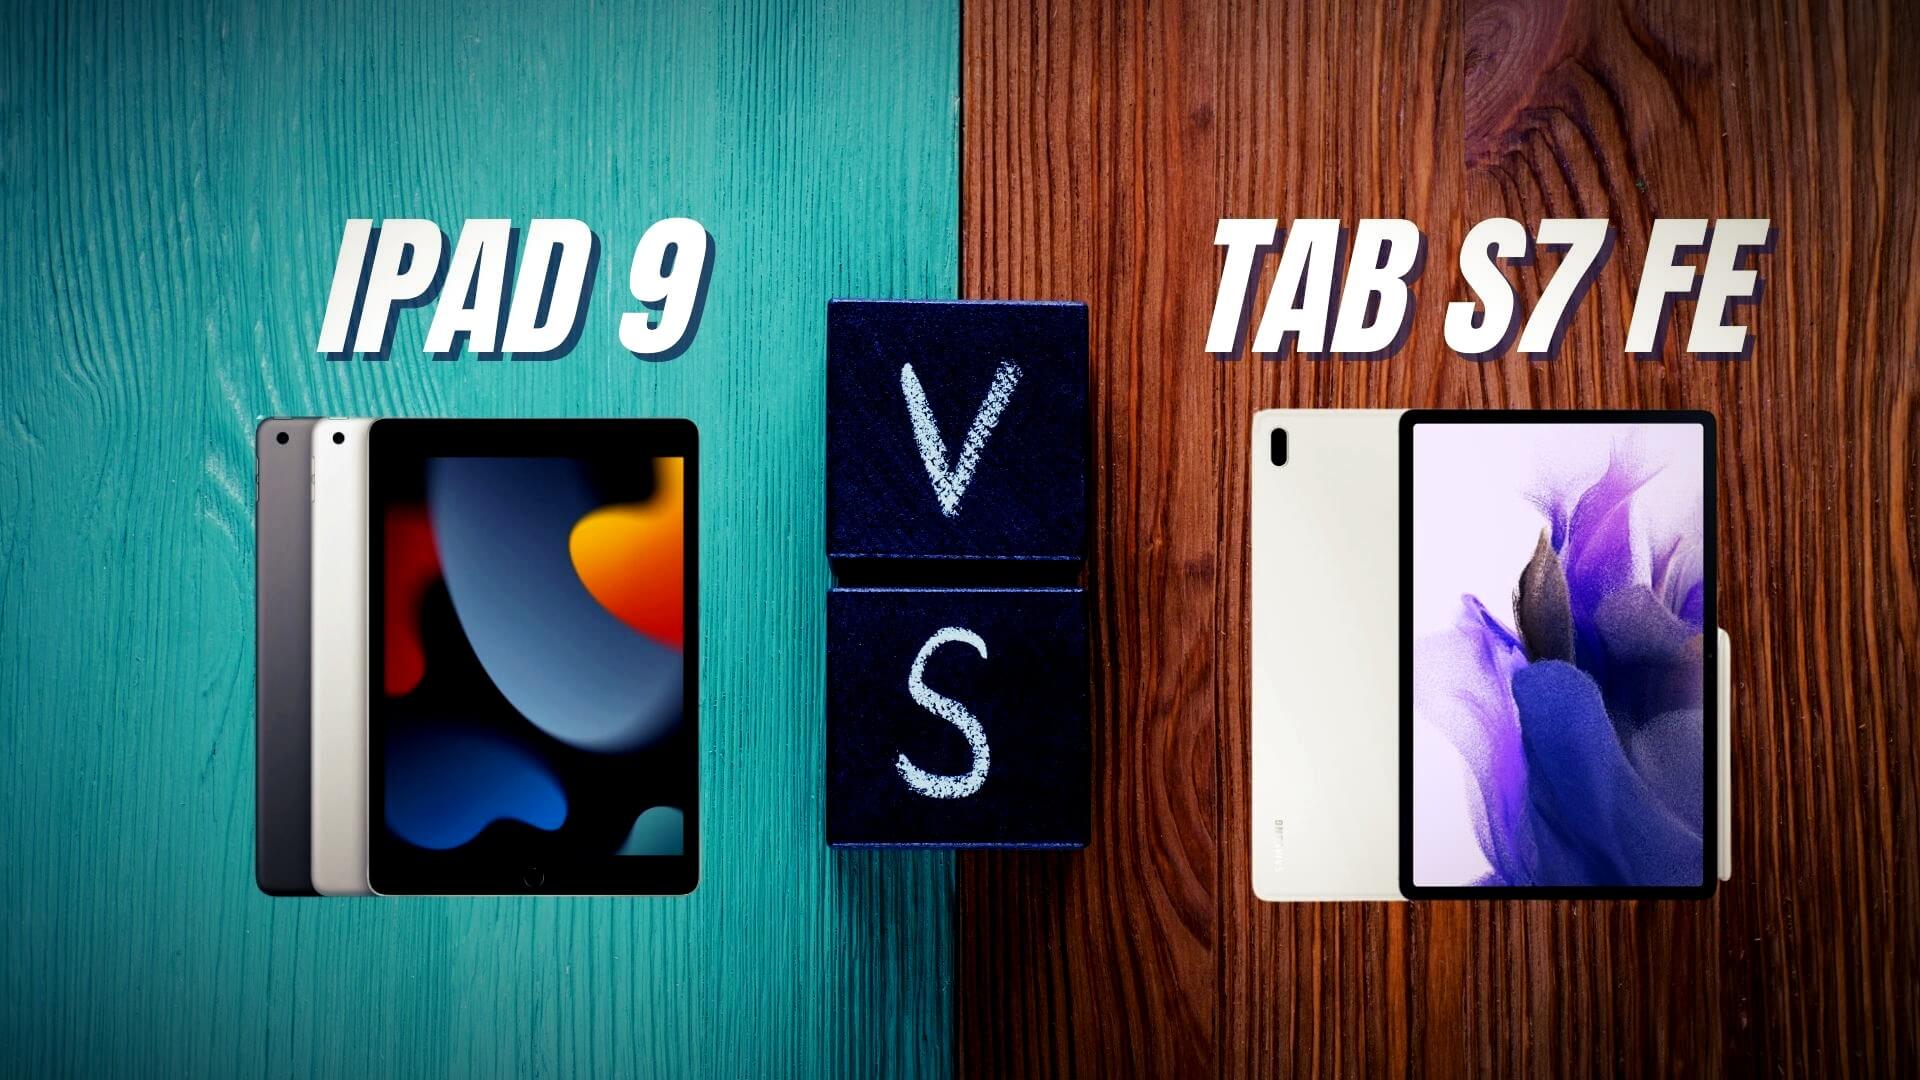 iPad 9 vs Galaxy Tab S7 FE